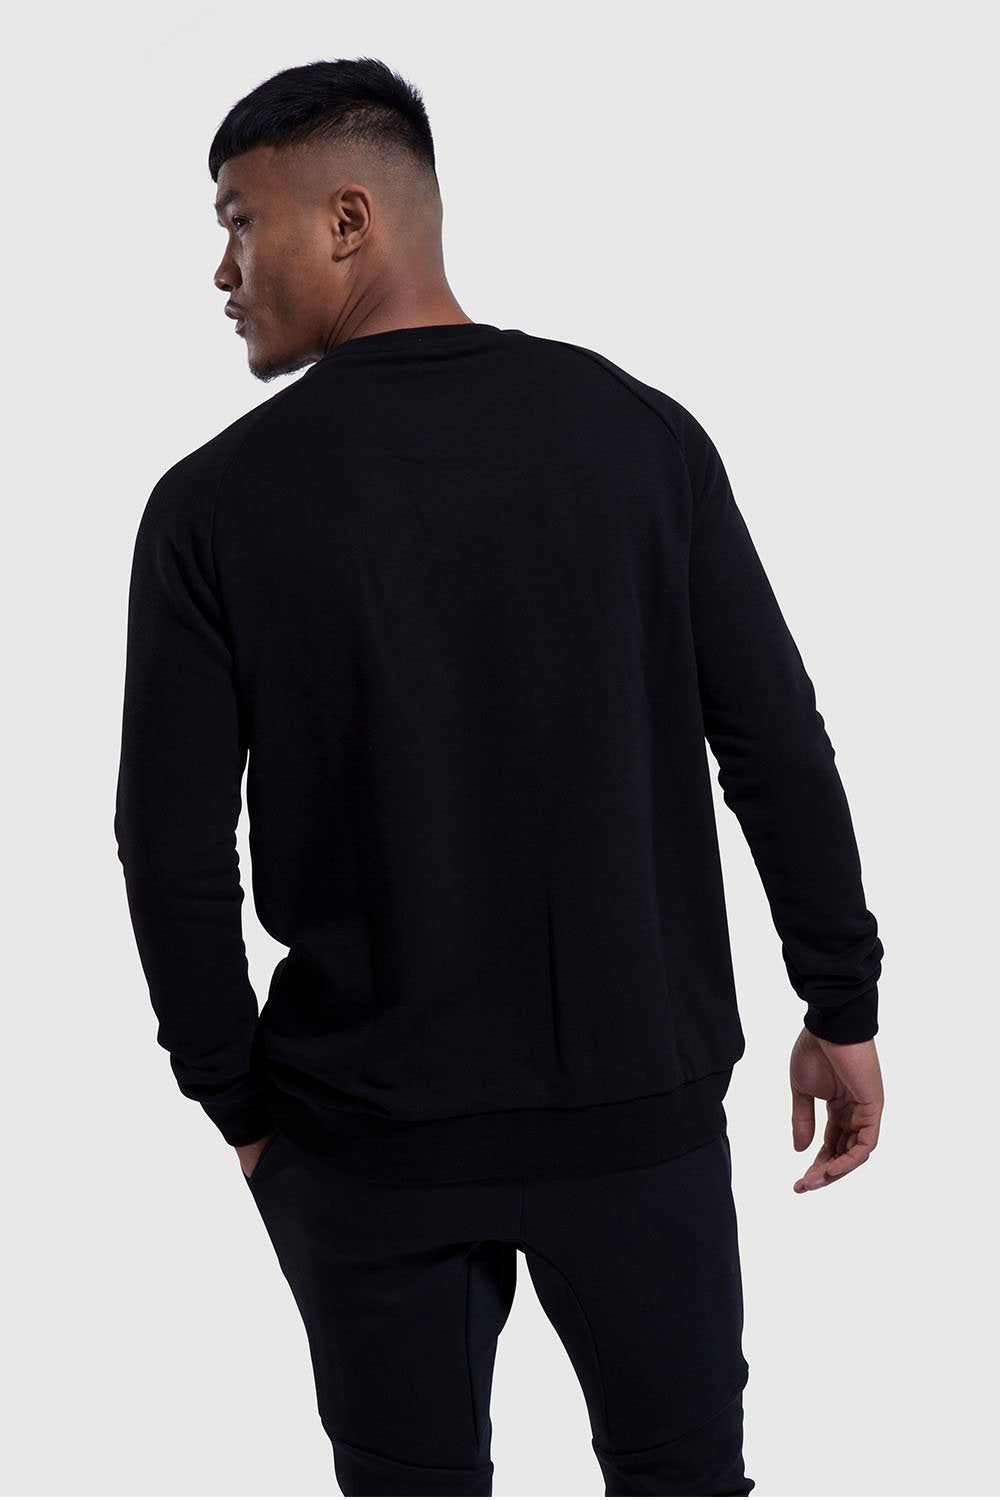 Premium Sweater - Black